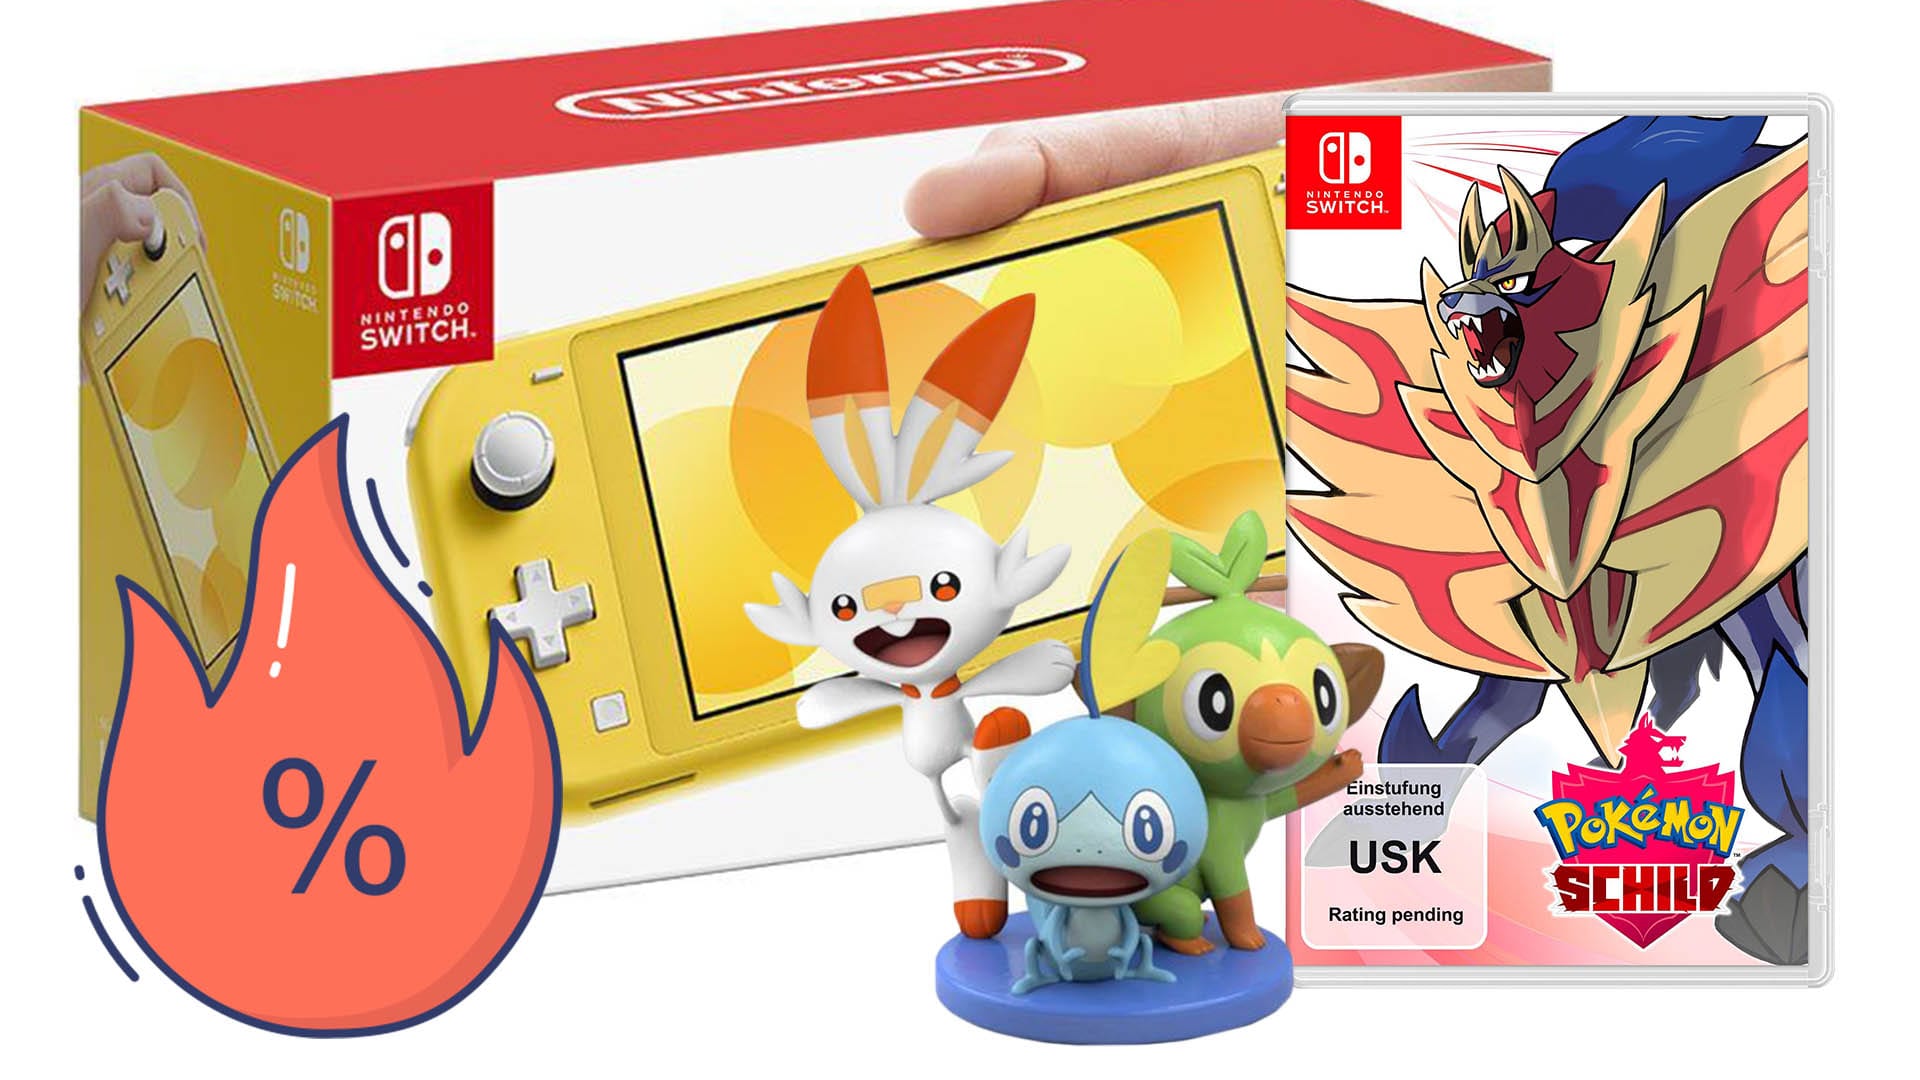 günstige 229 Switch Schild Nintendo bei Otto! jetzt sparen für Pokémon Euro, Lite und